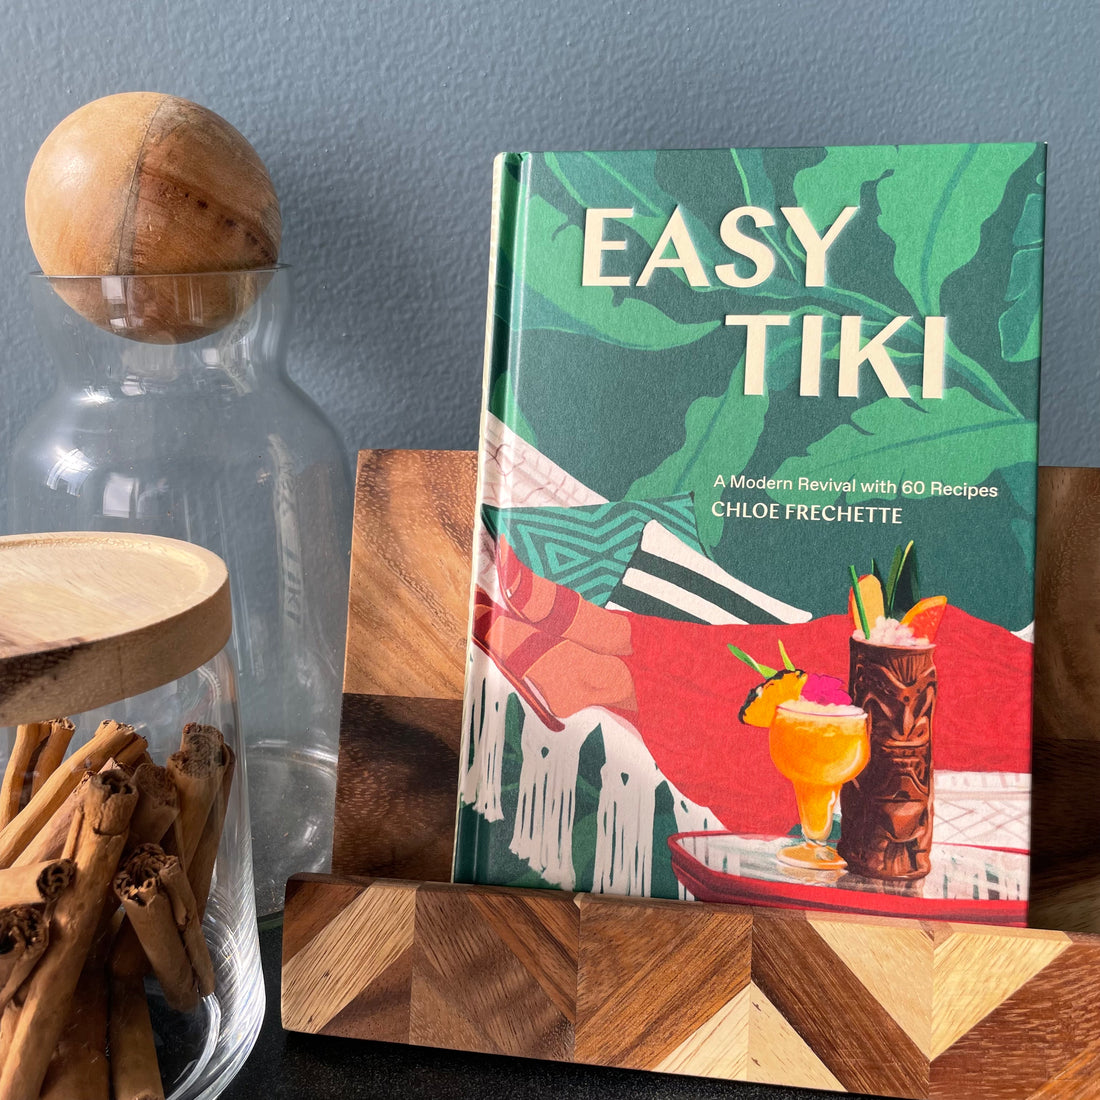 Easy Tiki By Chloe Frechette